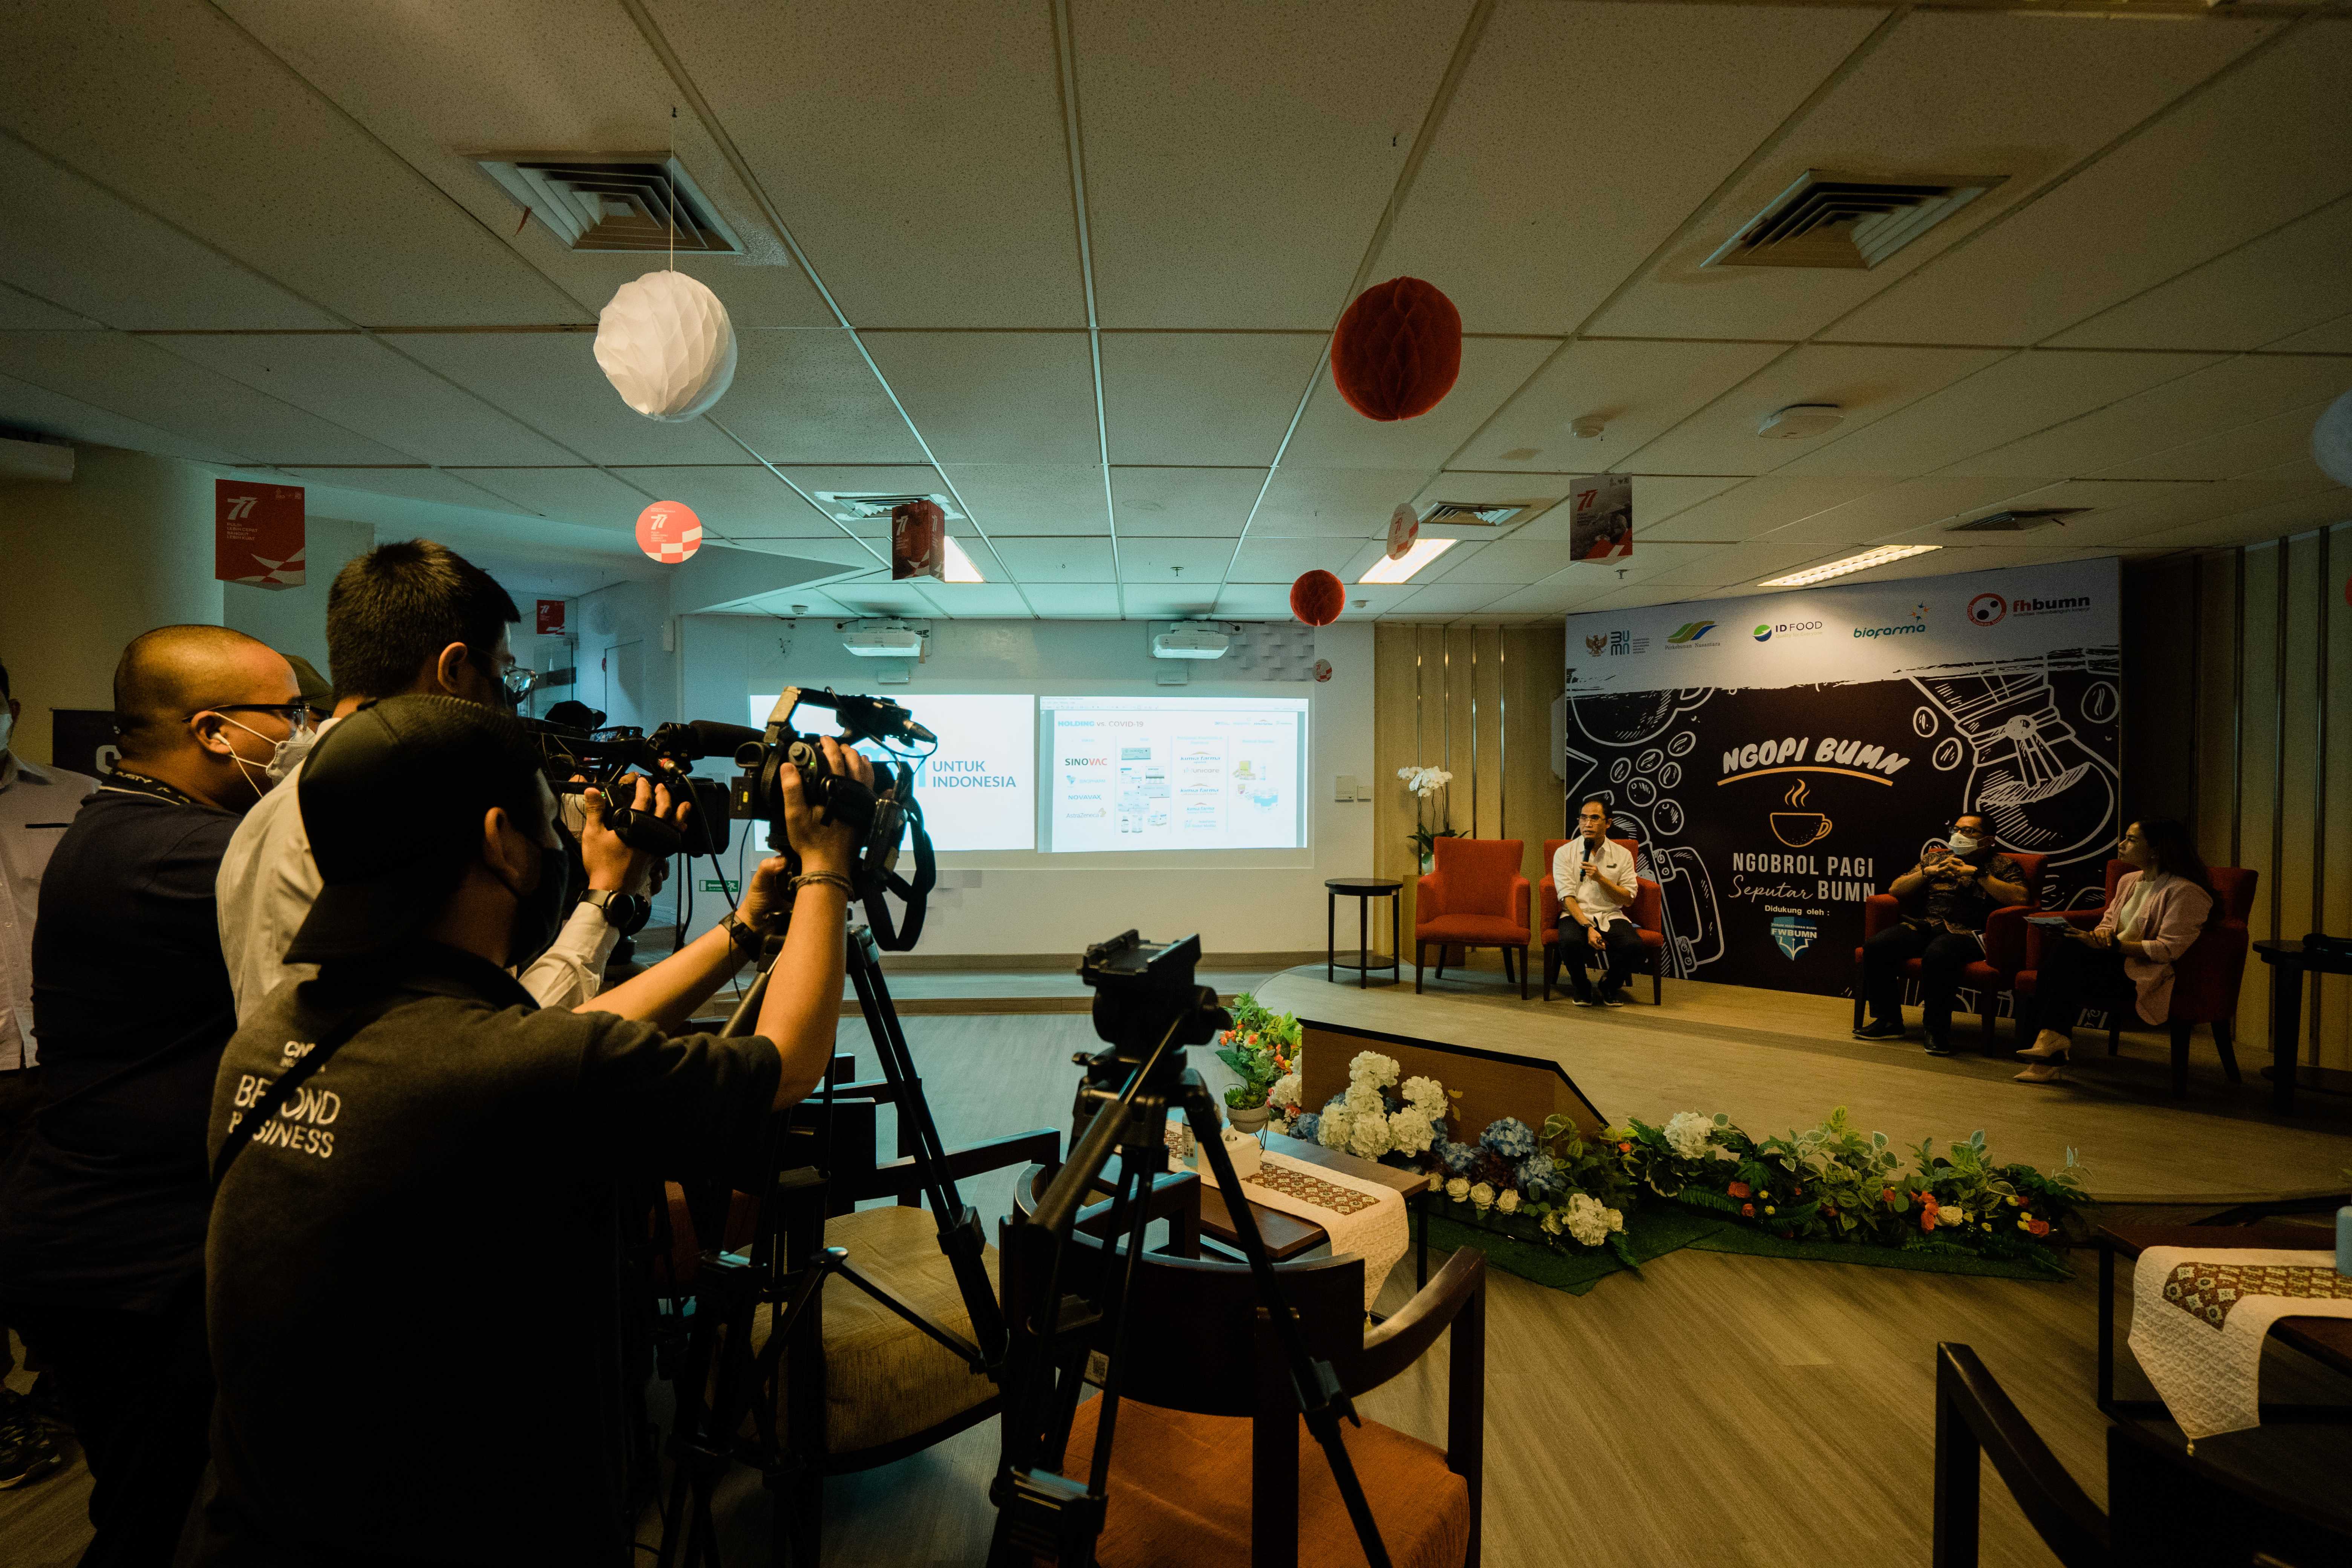 Kementerian Badan Usaha Milik Negara menyelenggarakan NGOPI BUMN “Ngobrol Pagi 𝓢𝒆𝓹𝓾𝓽𝓪𝓻 BUMN” dengan Tema "Sumbangsih BUMN Kepada Masyarakat Indonesia" bersama rekan-rekan media di Jakarta